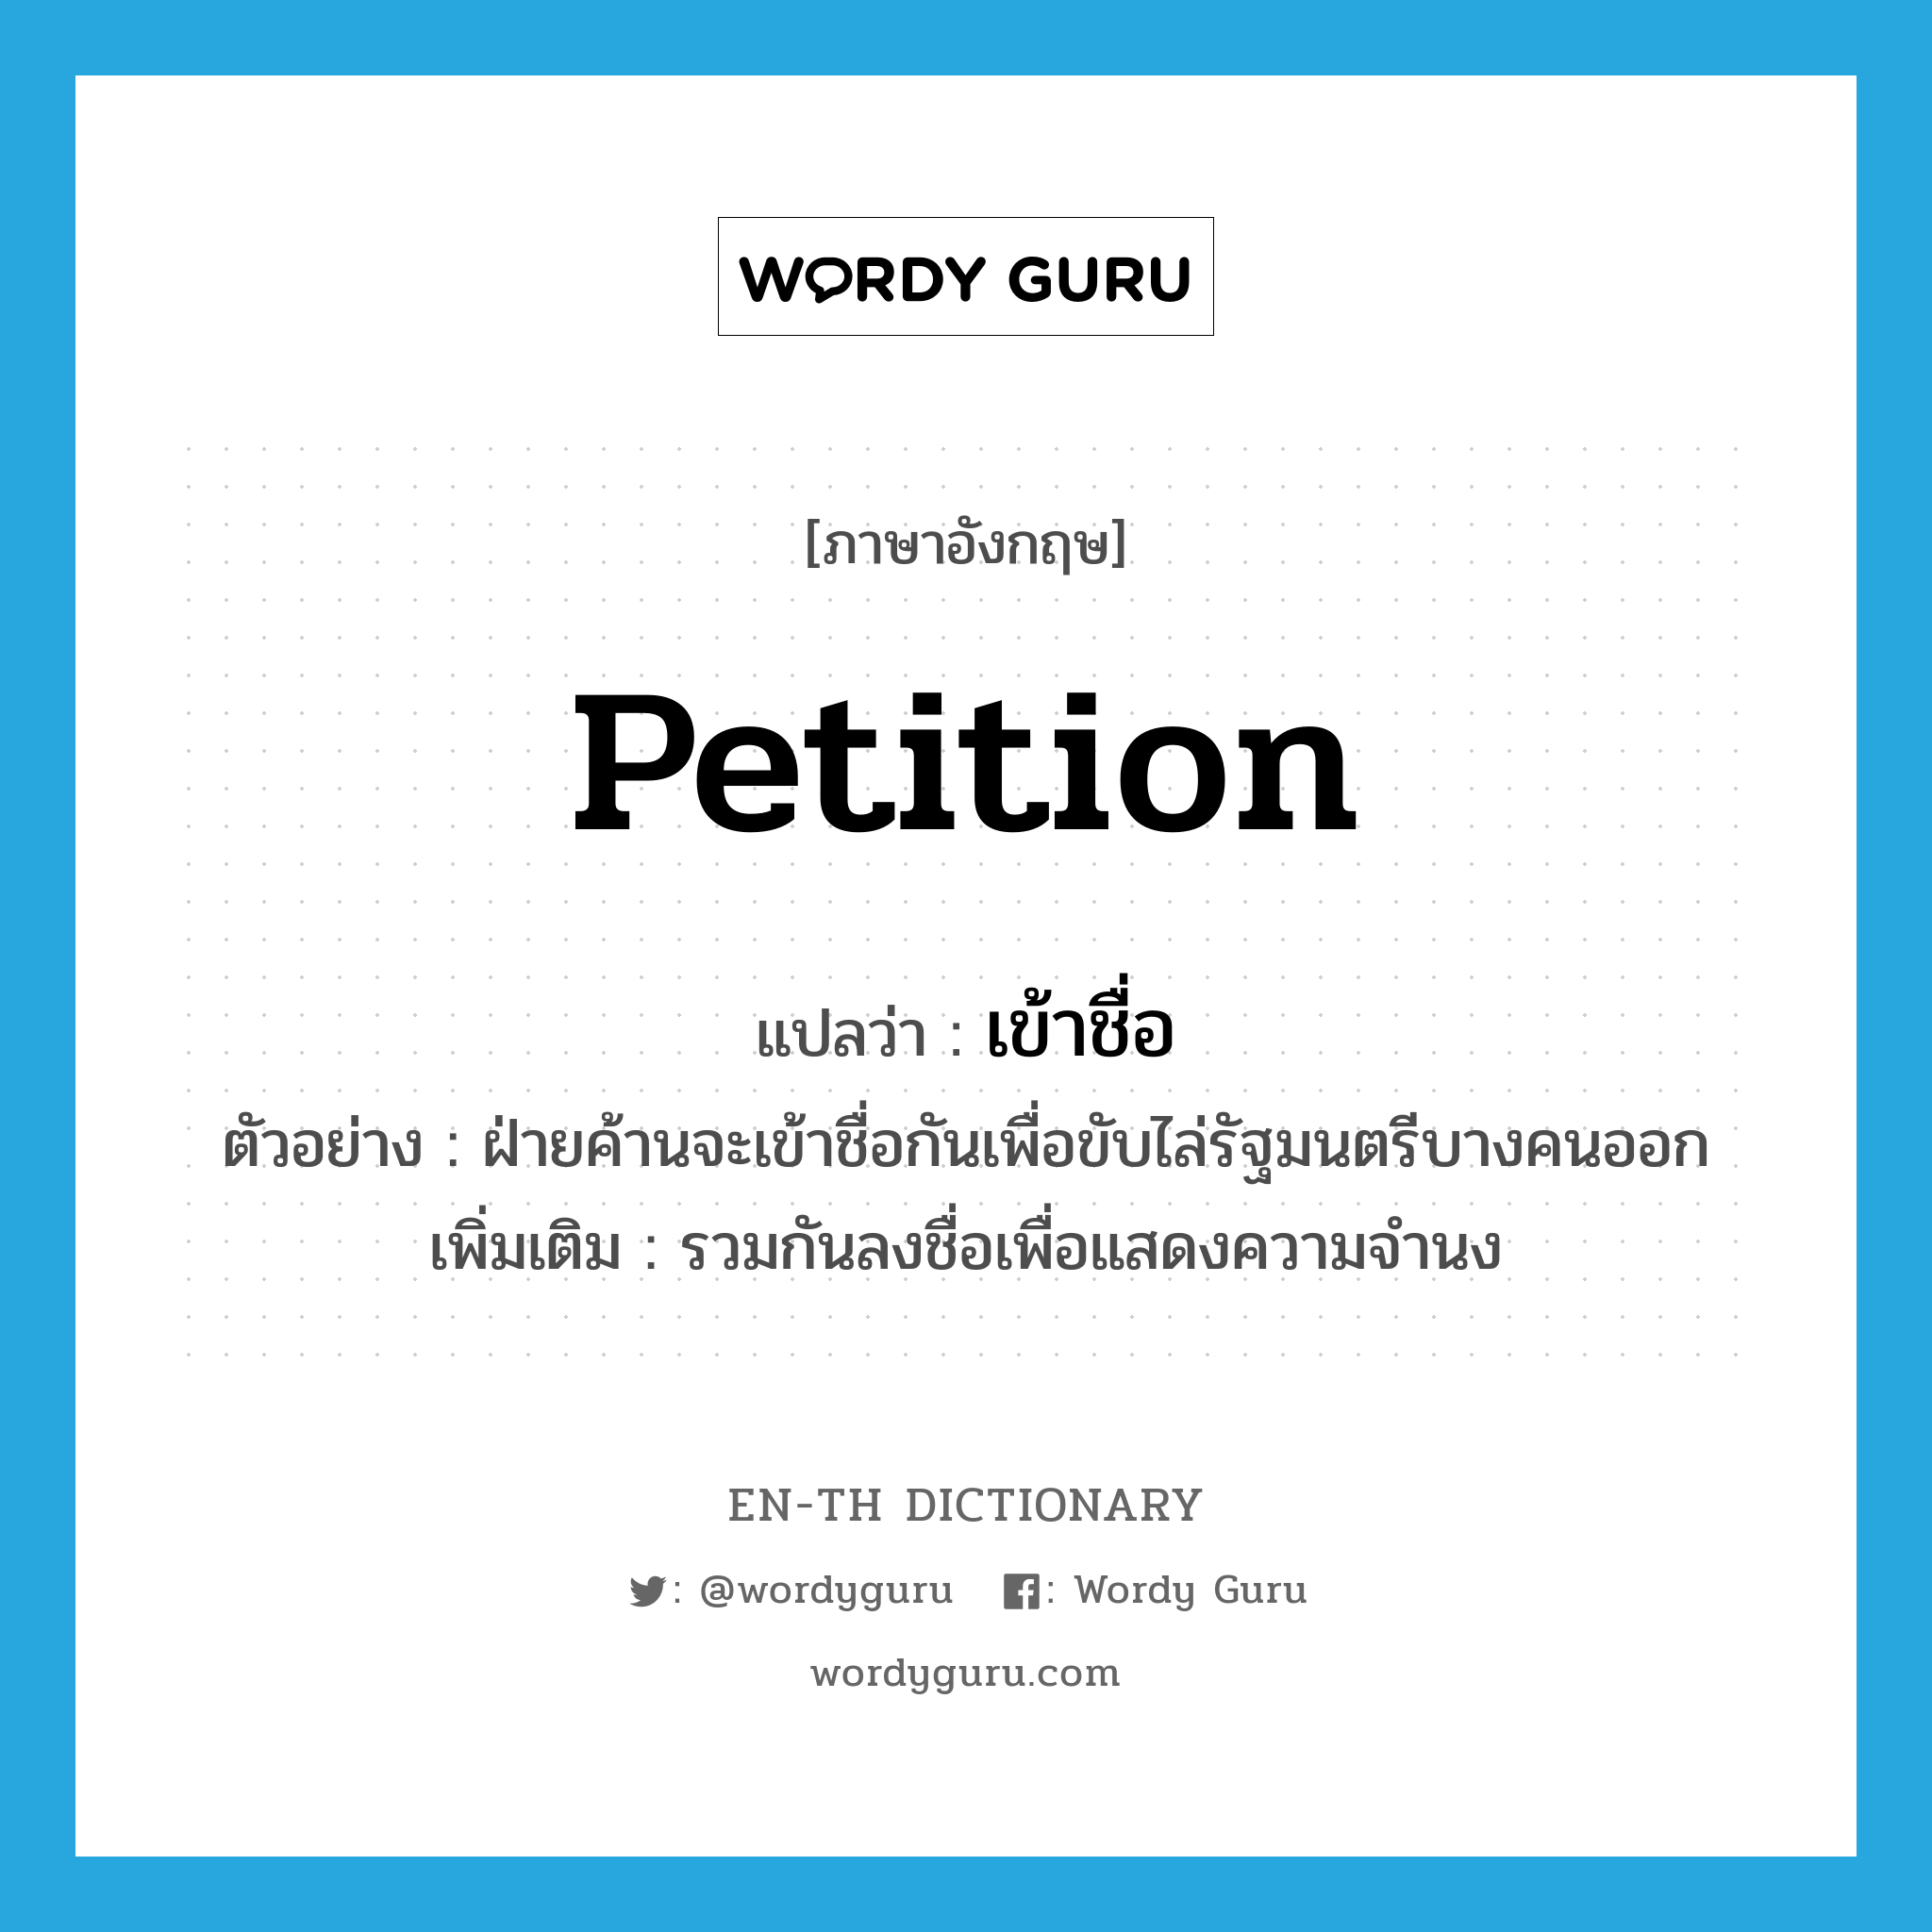 petition แปลว่า?, คำศัพท์ภาษาอังกฤษ petition แปลว่า เข้าชื่อ ประเภท V ตัวอย่าง ฝ่ายค้านจะเข้าชื่อกันเพื่อขับไล่รัฐมนตรีบางคนออก เพิ่มเติม รวมกันลงชื่อเพื่อแสดงความจำนง หมวด V